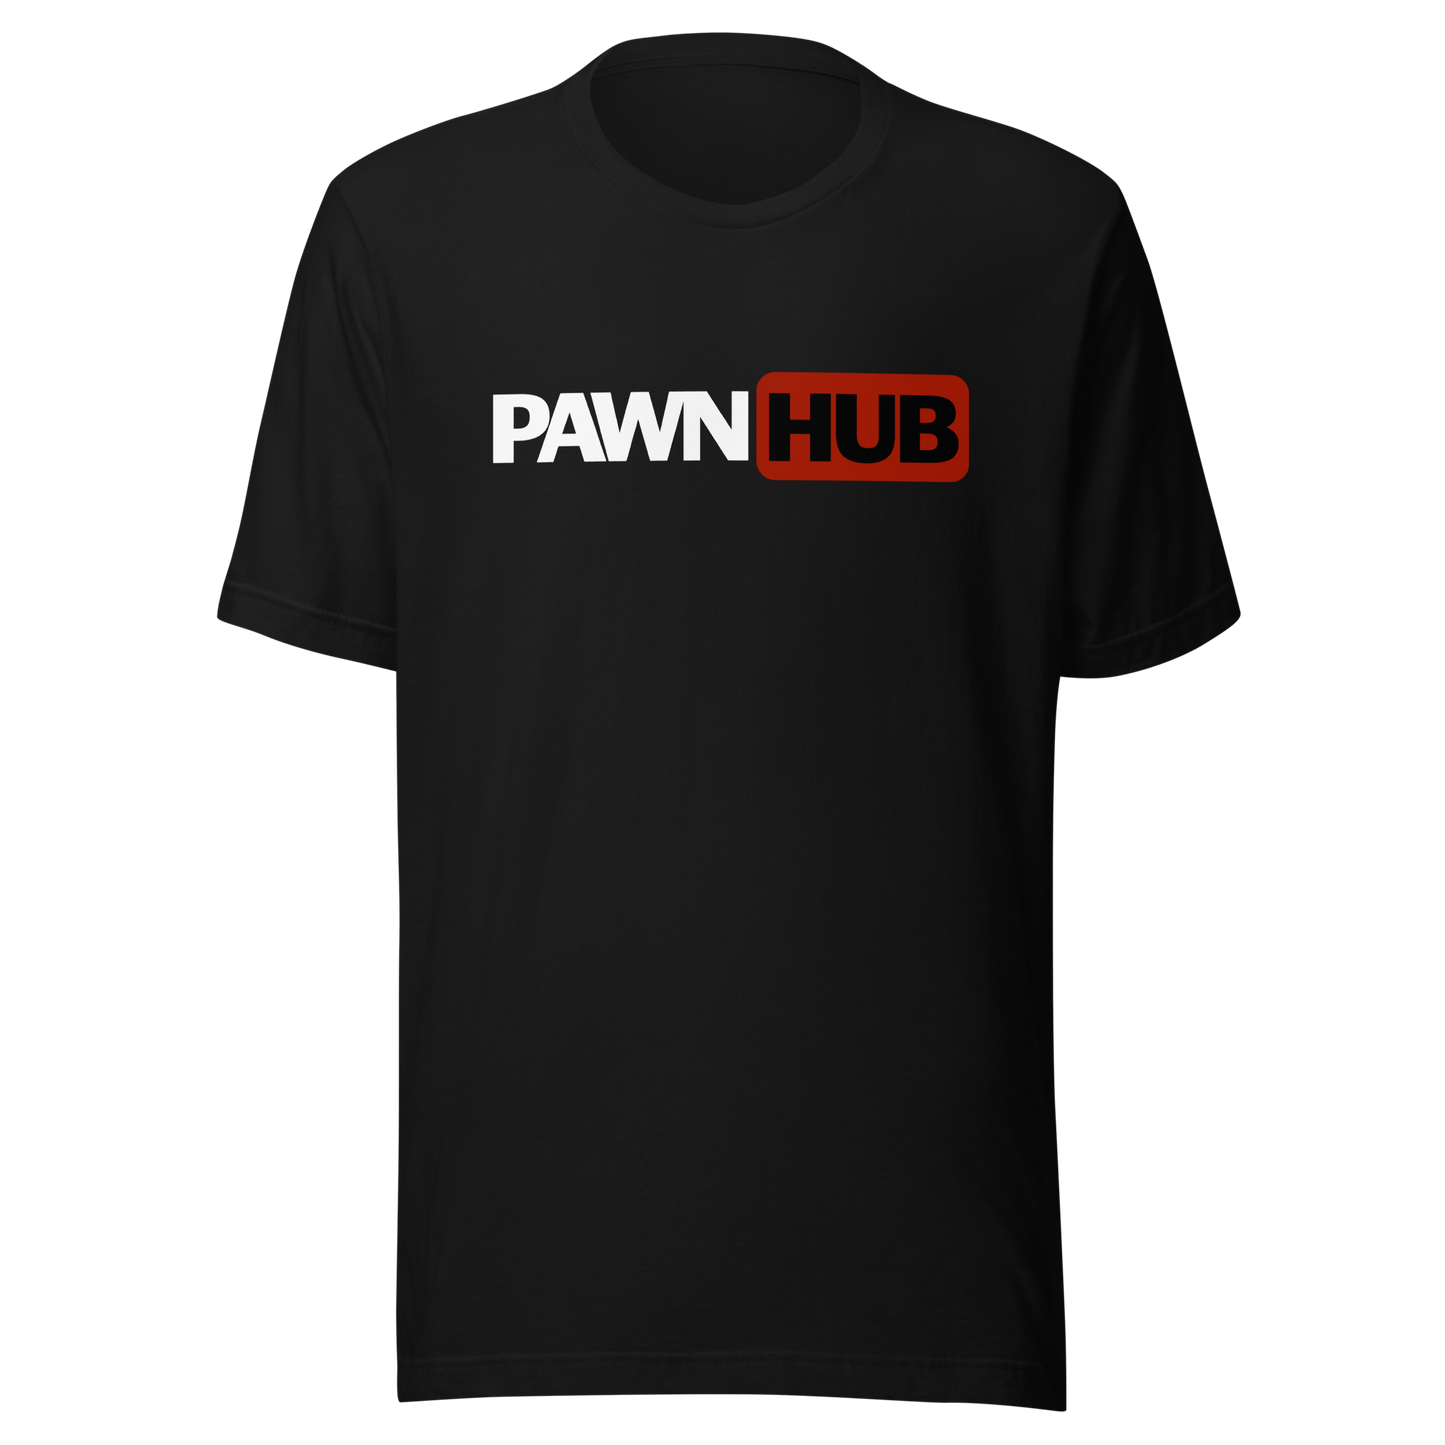 Unisex Short-Sleeve Top: Pawnhub